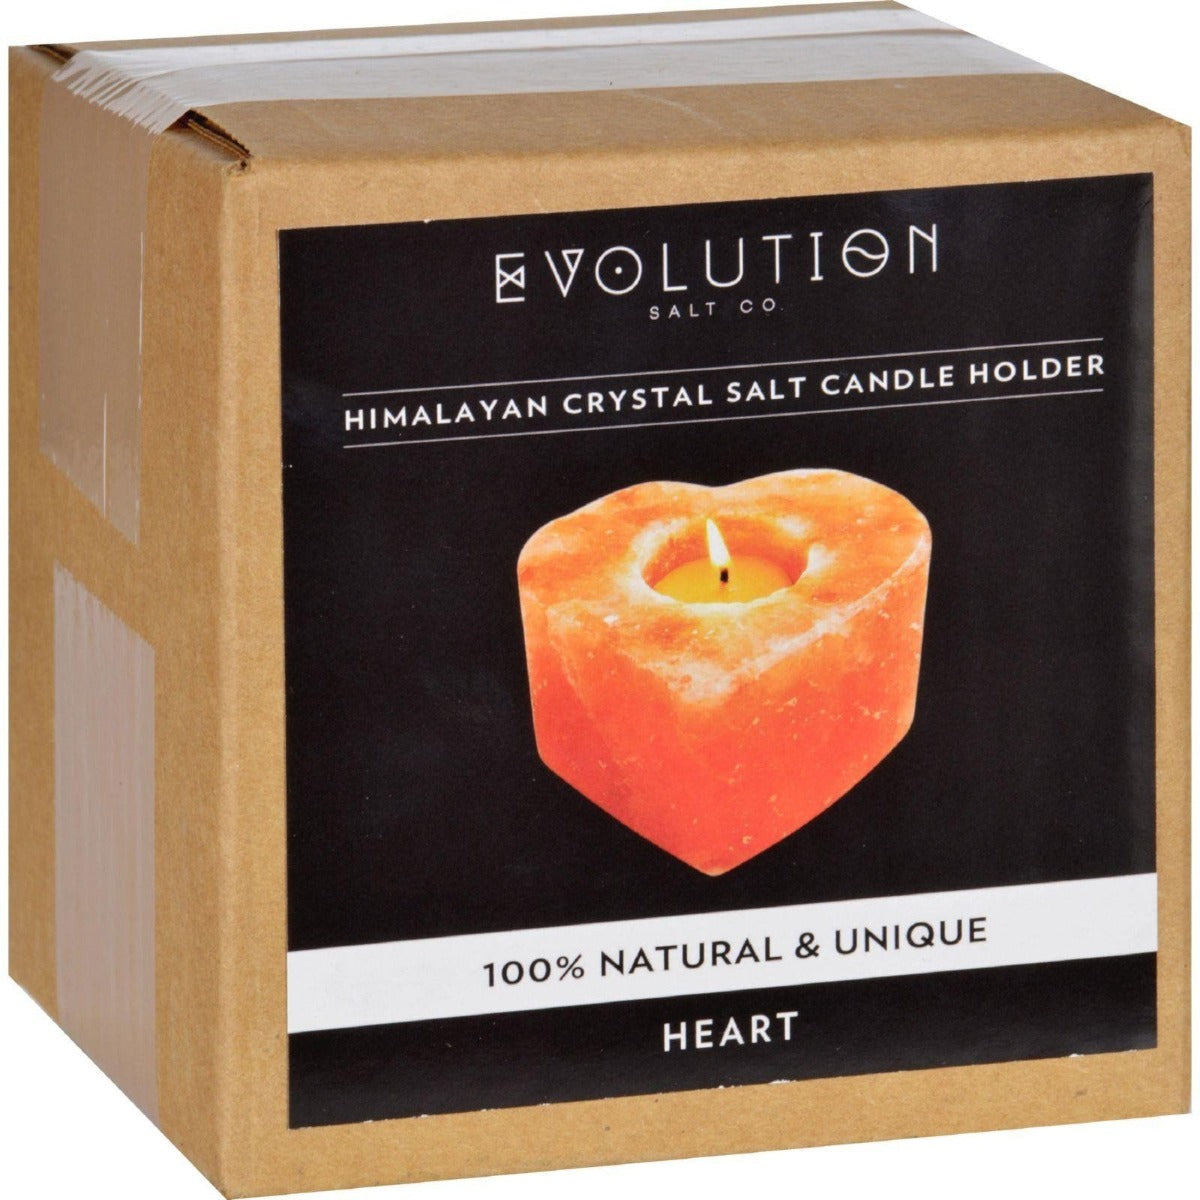 EVOLUTION SALT: Heart Tealight Himalayan Crystal Salt Candle Holder, 1 ea - Vending Business Solutions